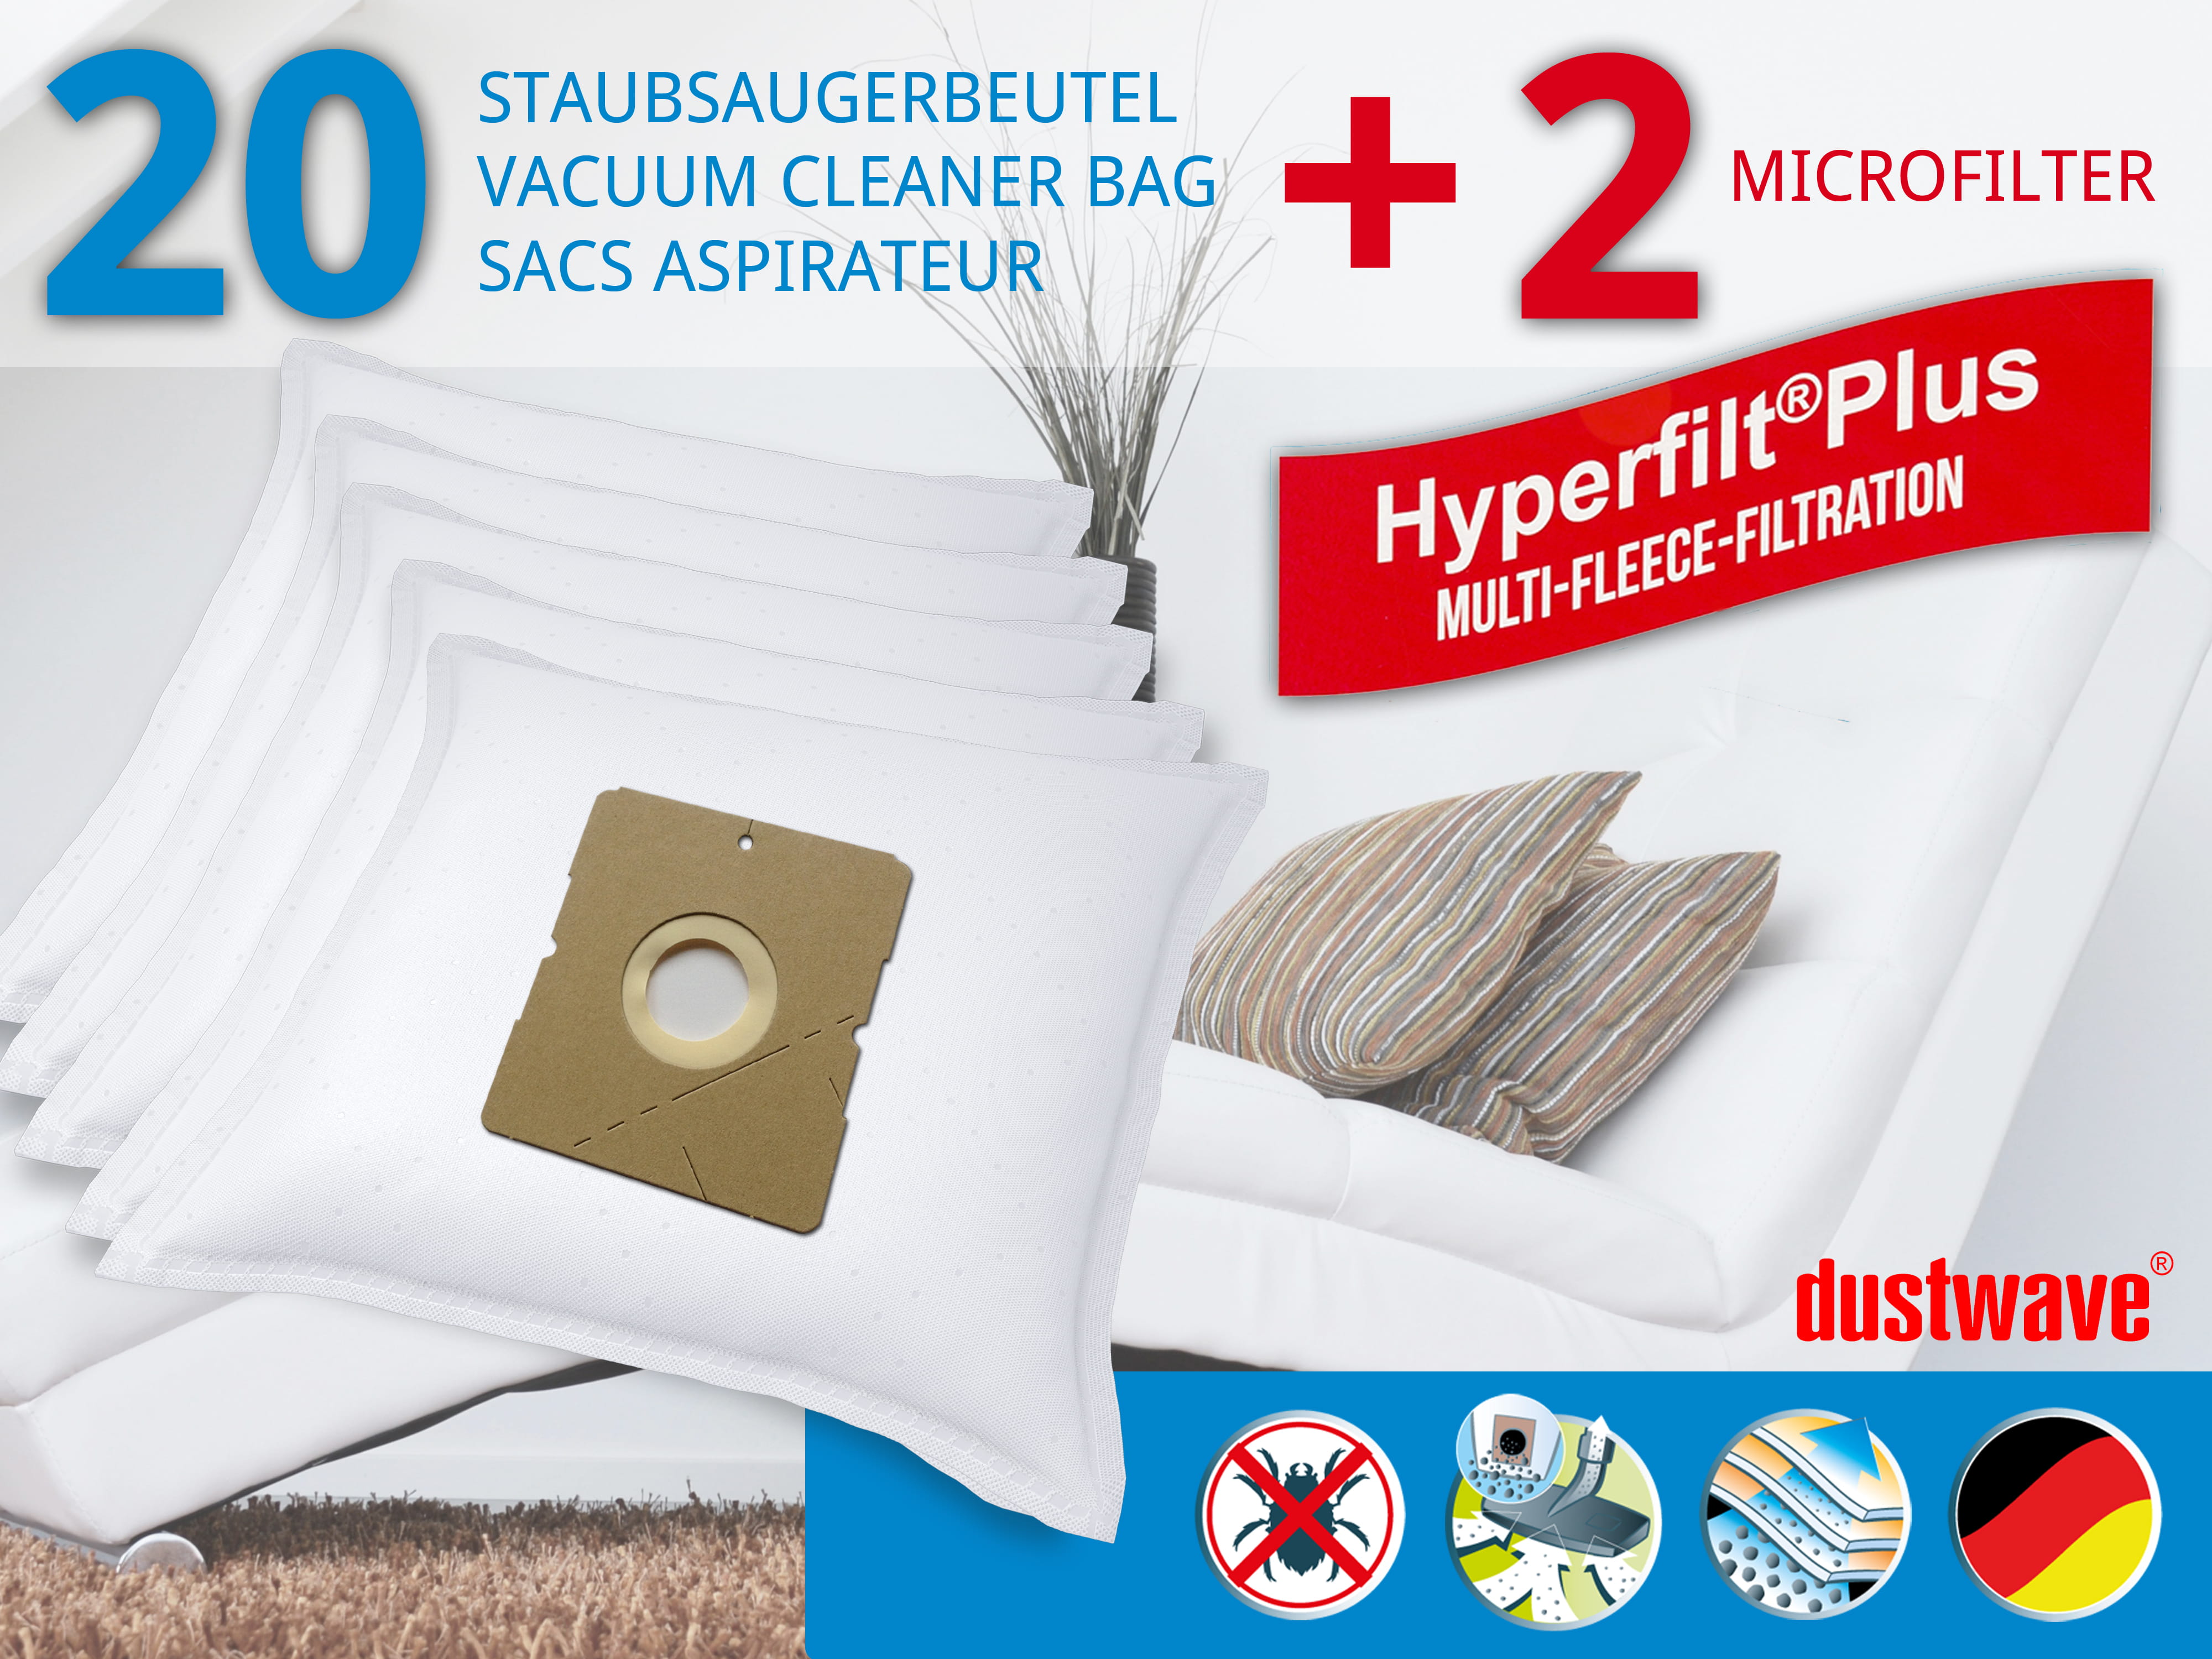 Dustwave® 20 Staubsaugerbeutel für Hoover TDC2000 001 - hocheffizient, mehrlagiges Mikrovlies mit Hygieneverschluss - Made in Germany